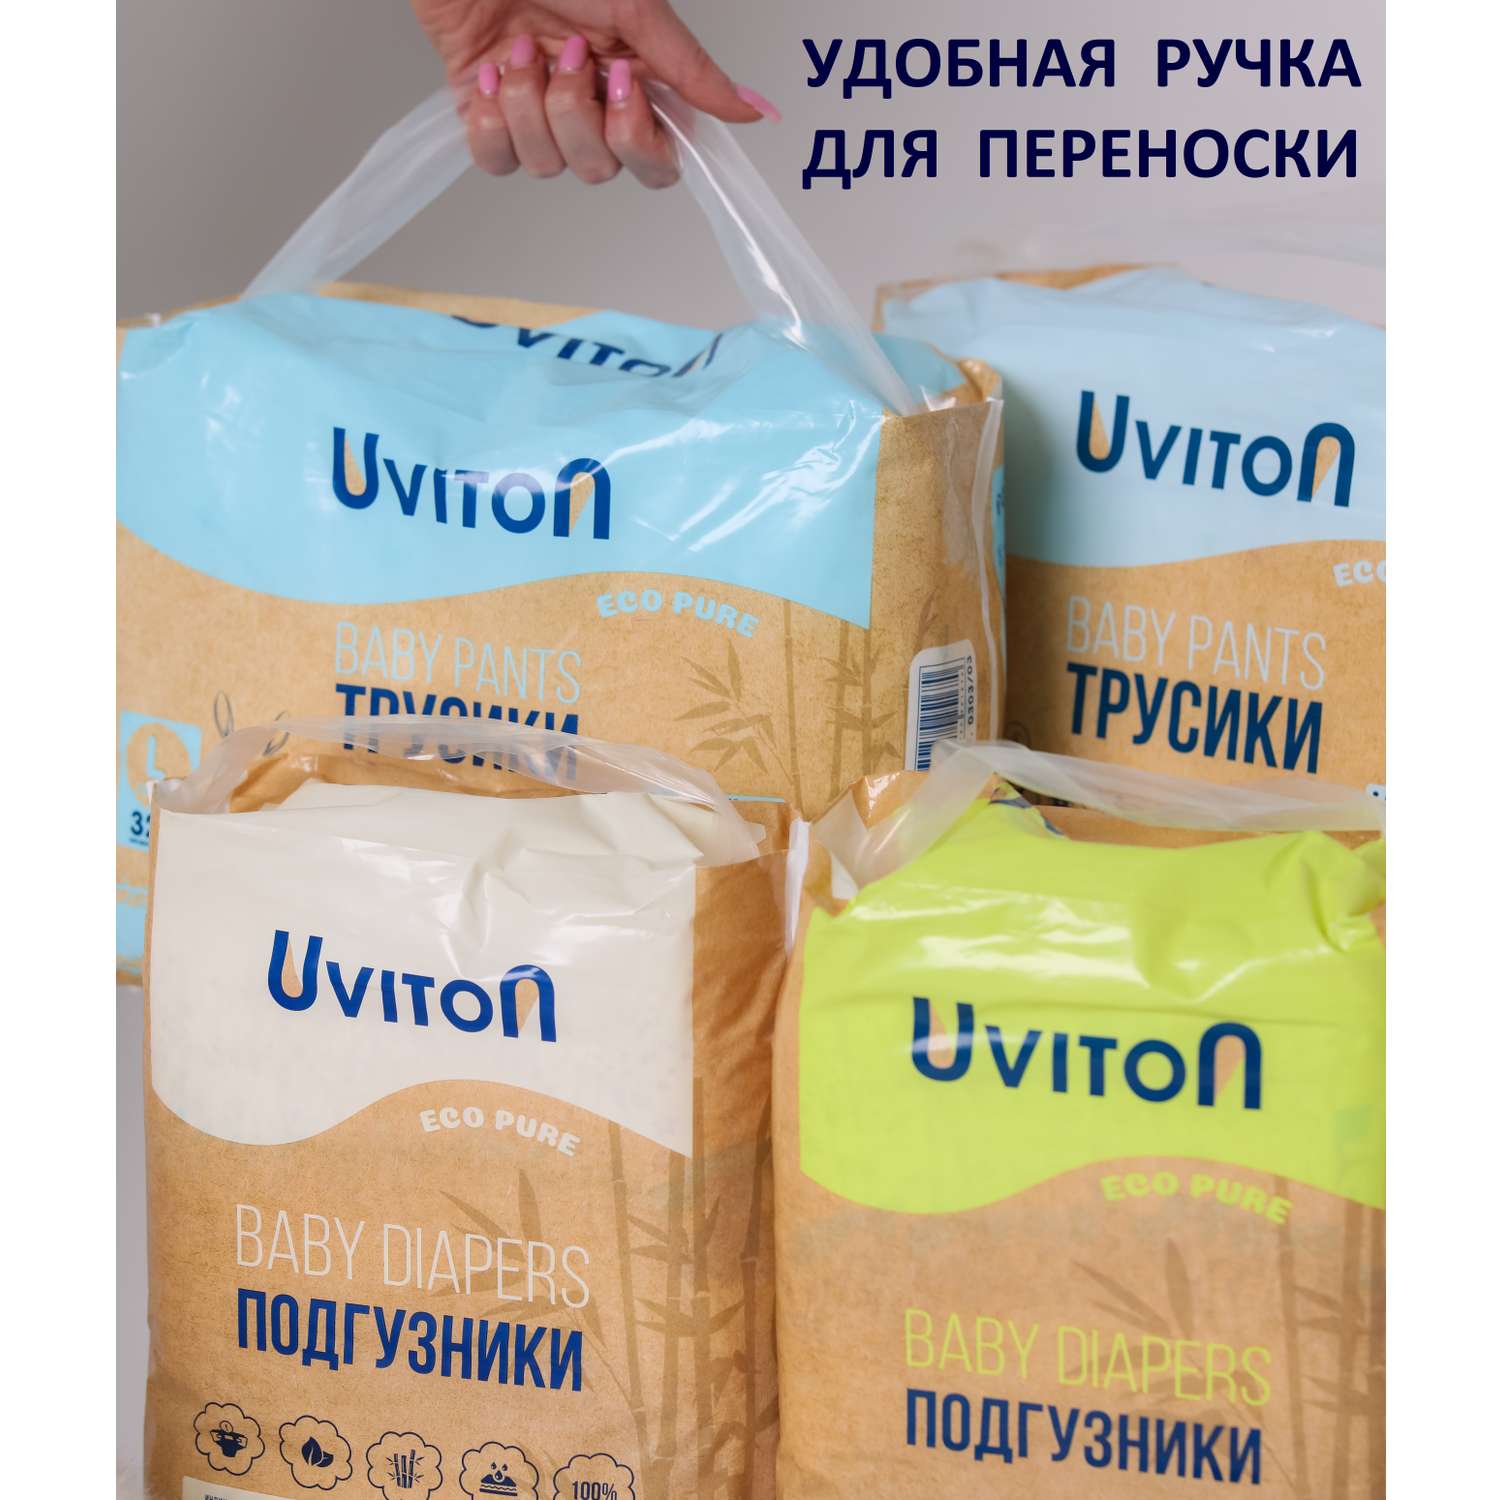 Подгузники Uviton детские размер М (5-11кг.) 38шт. в уп. - фото 17